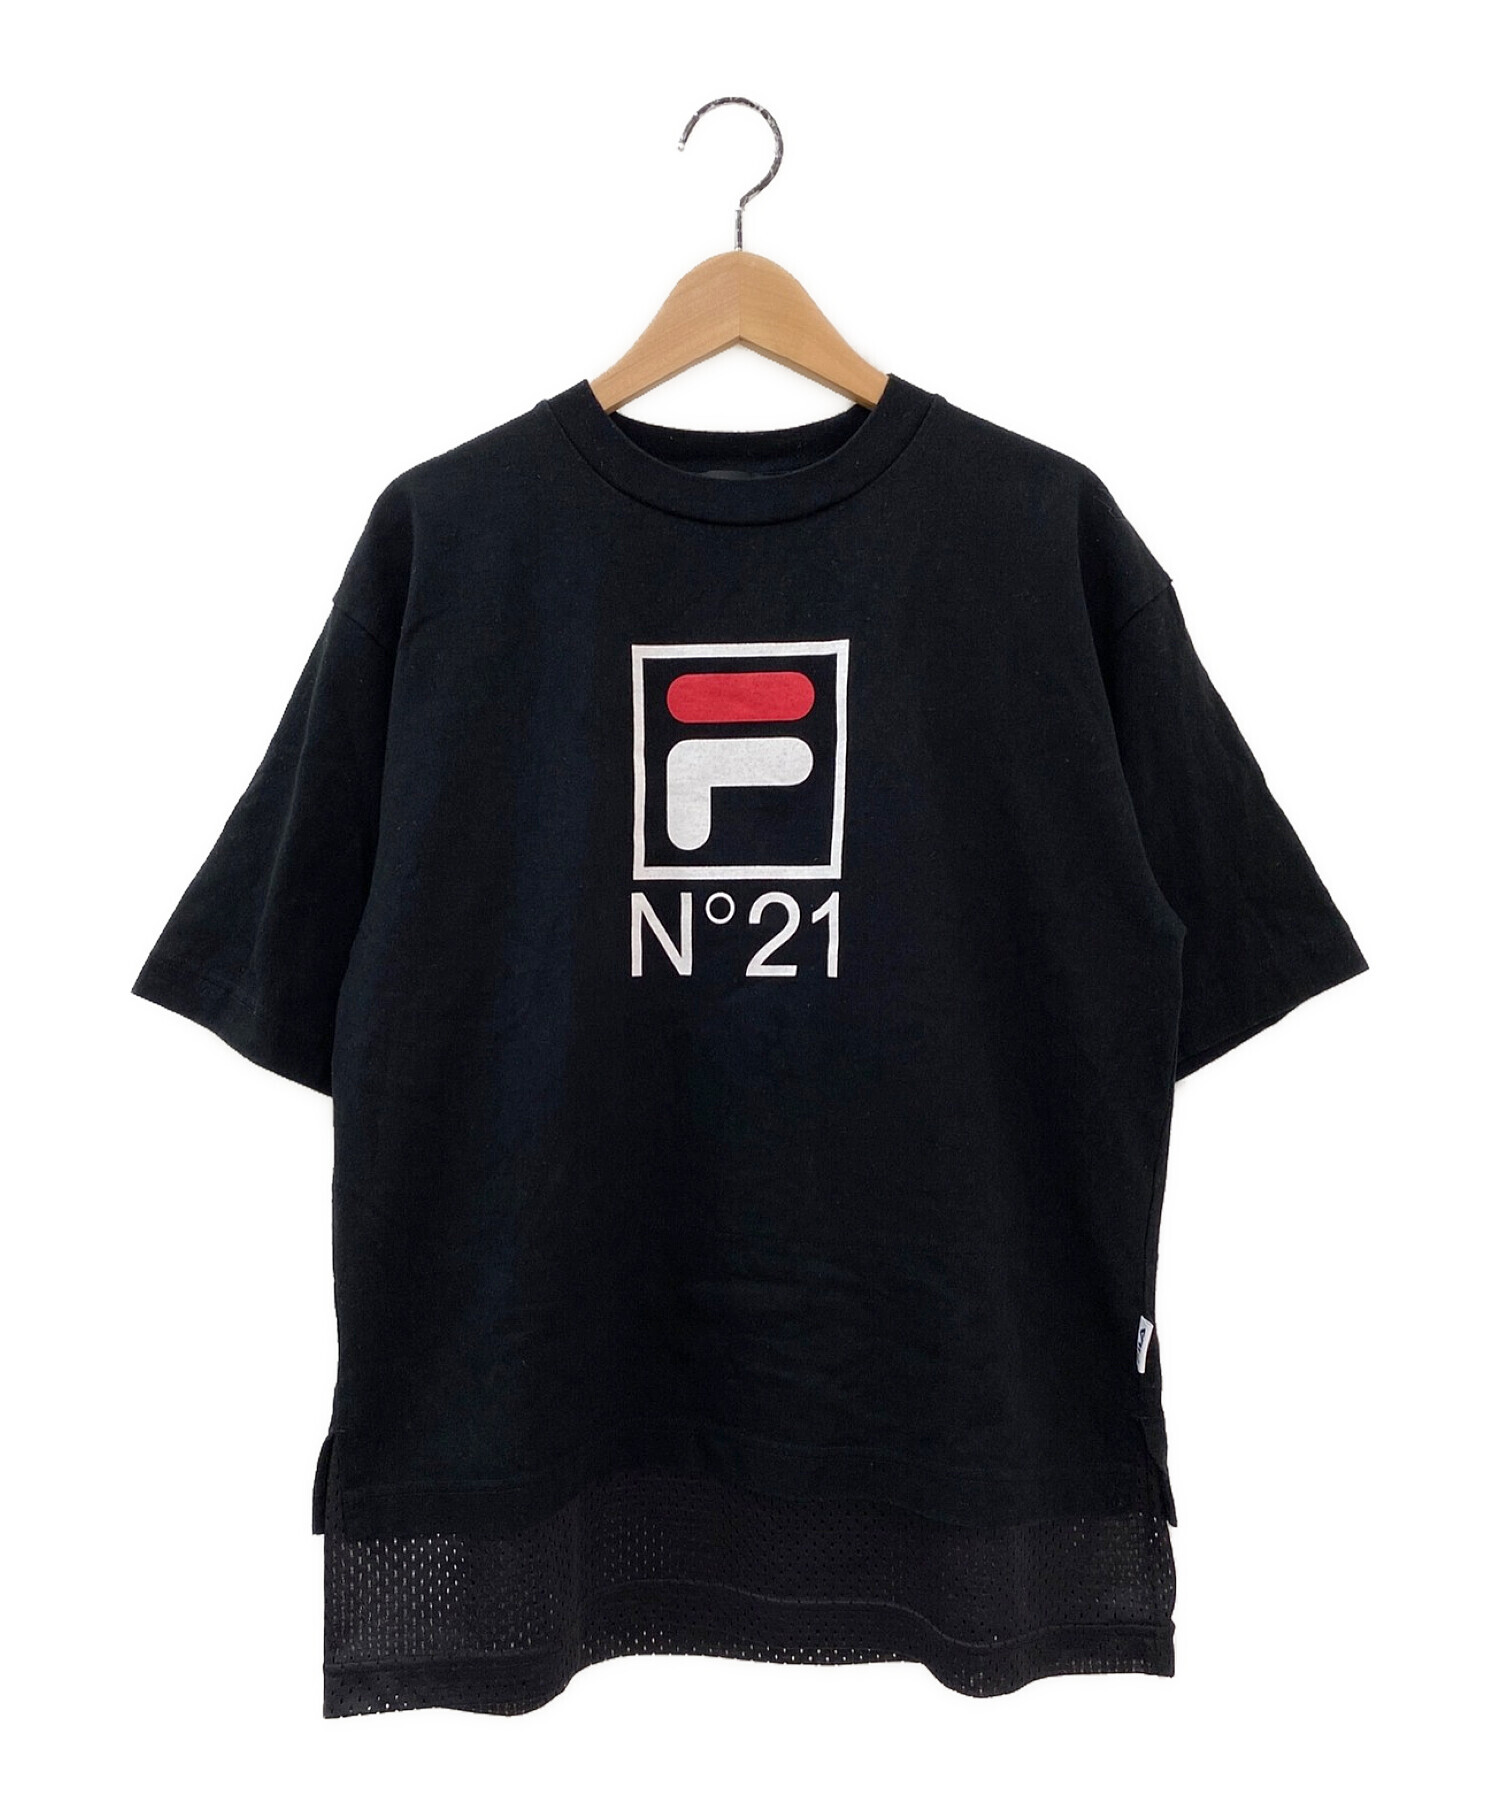 N°21 (ヌメロヴェントゥーノ) FILA (フィラ) メッシュロゴTシャツ ブラック サイズ:XS